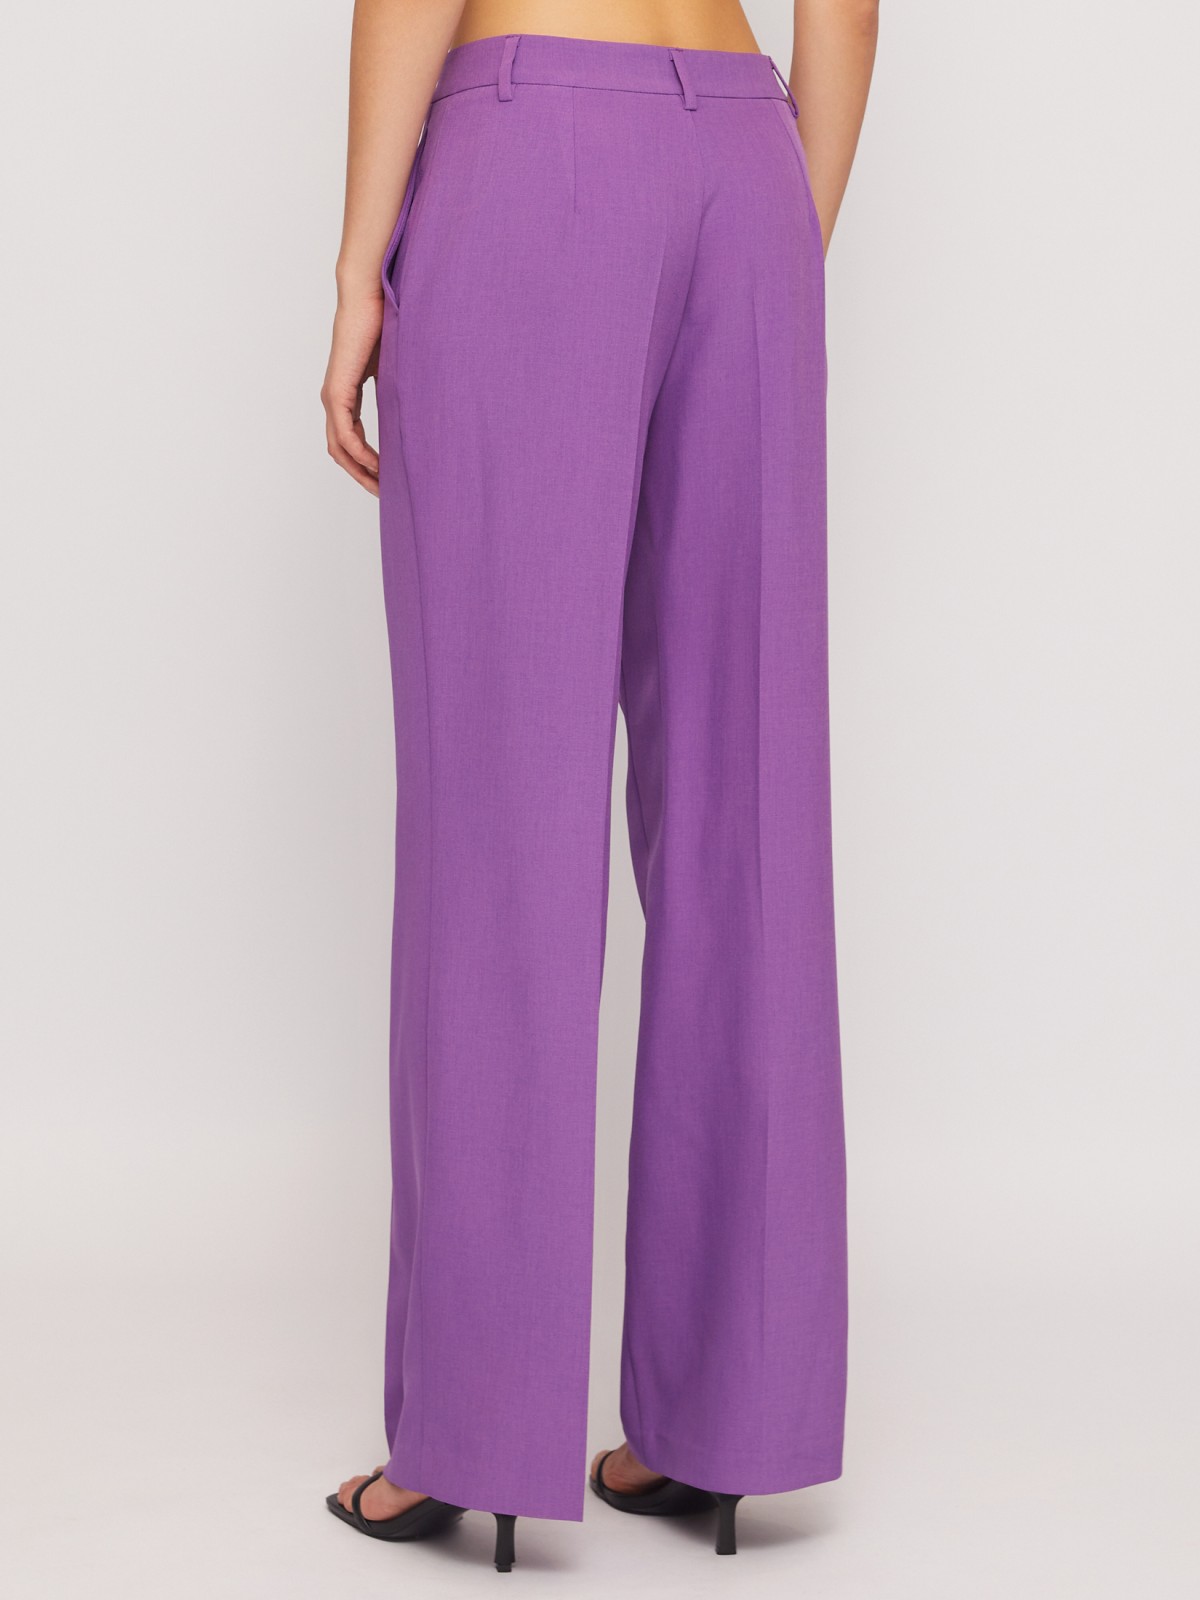 Классические прямые брюки со стрелками zolla 024247350063, цвет фиолетовый, размер XS - фото 5